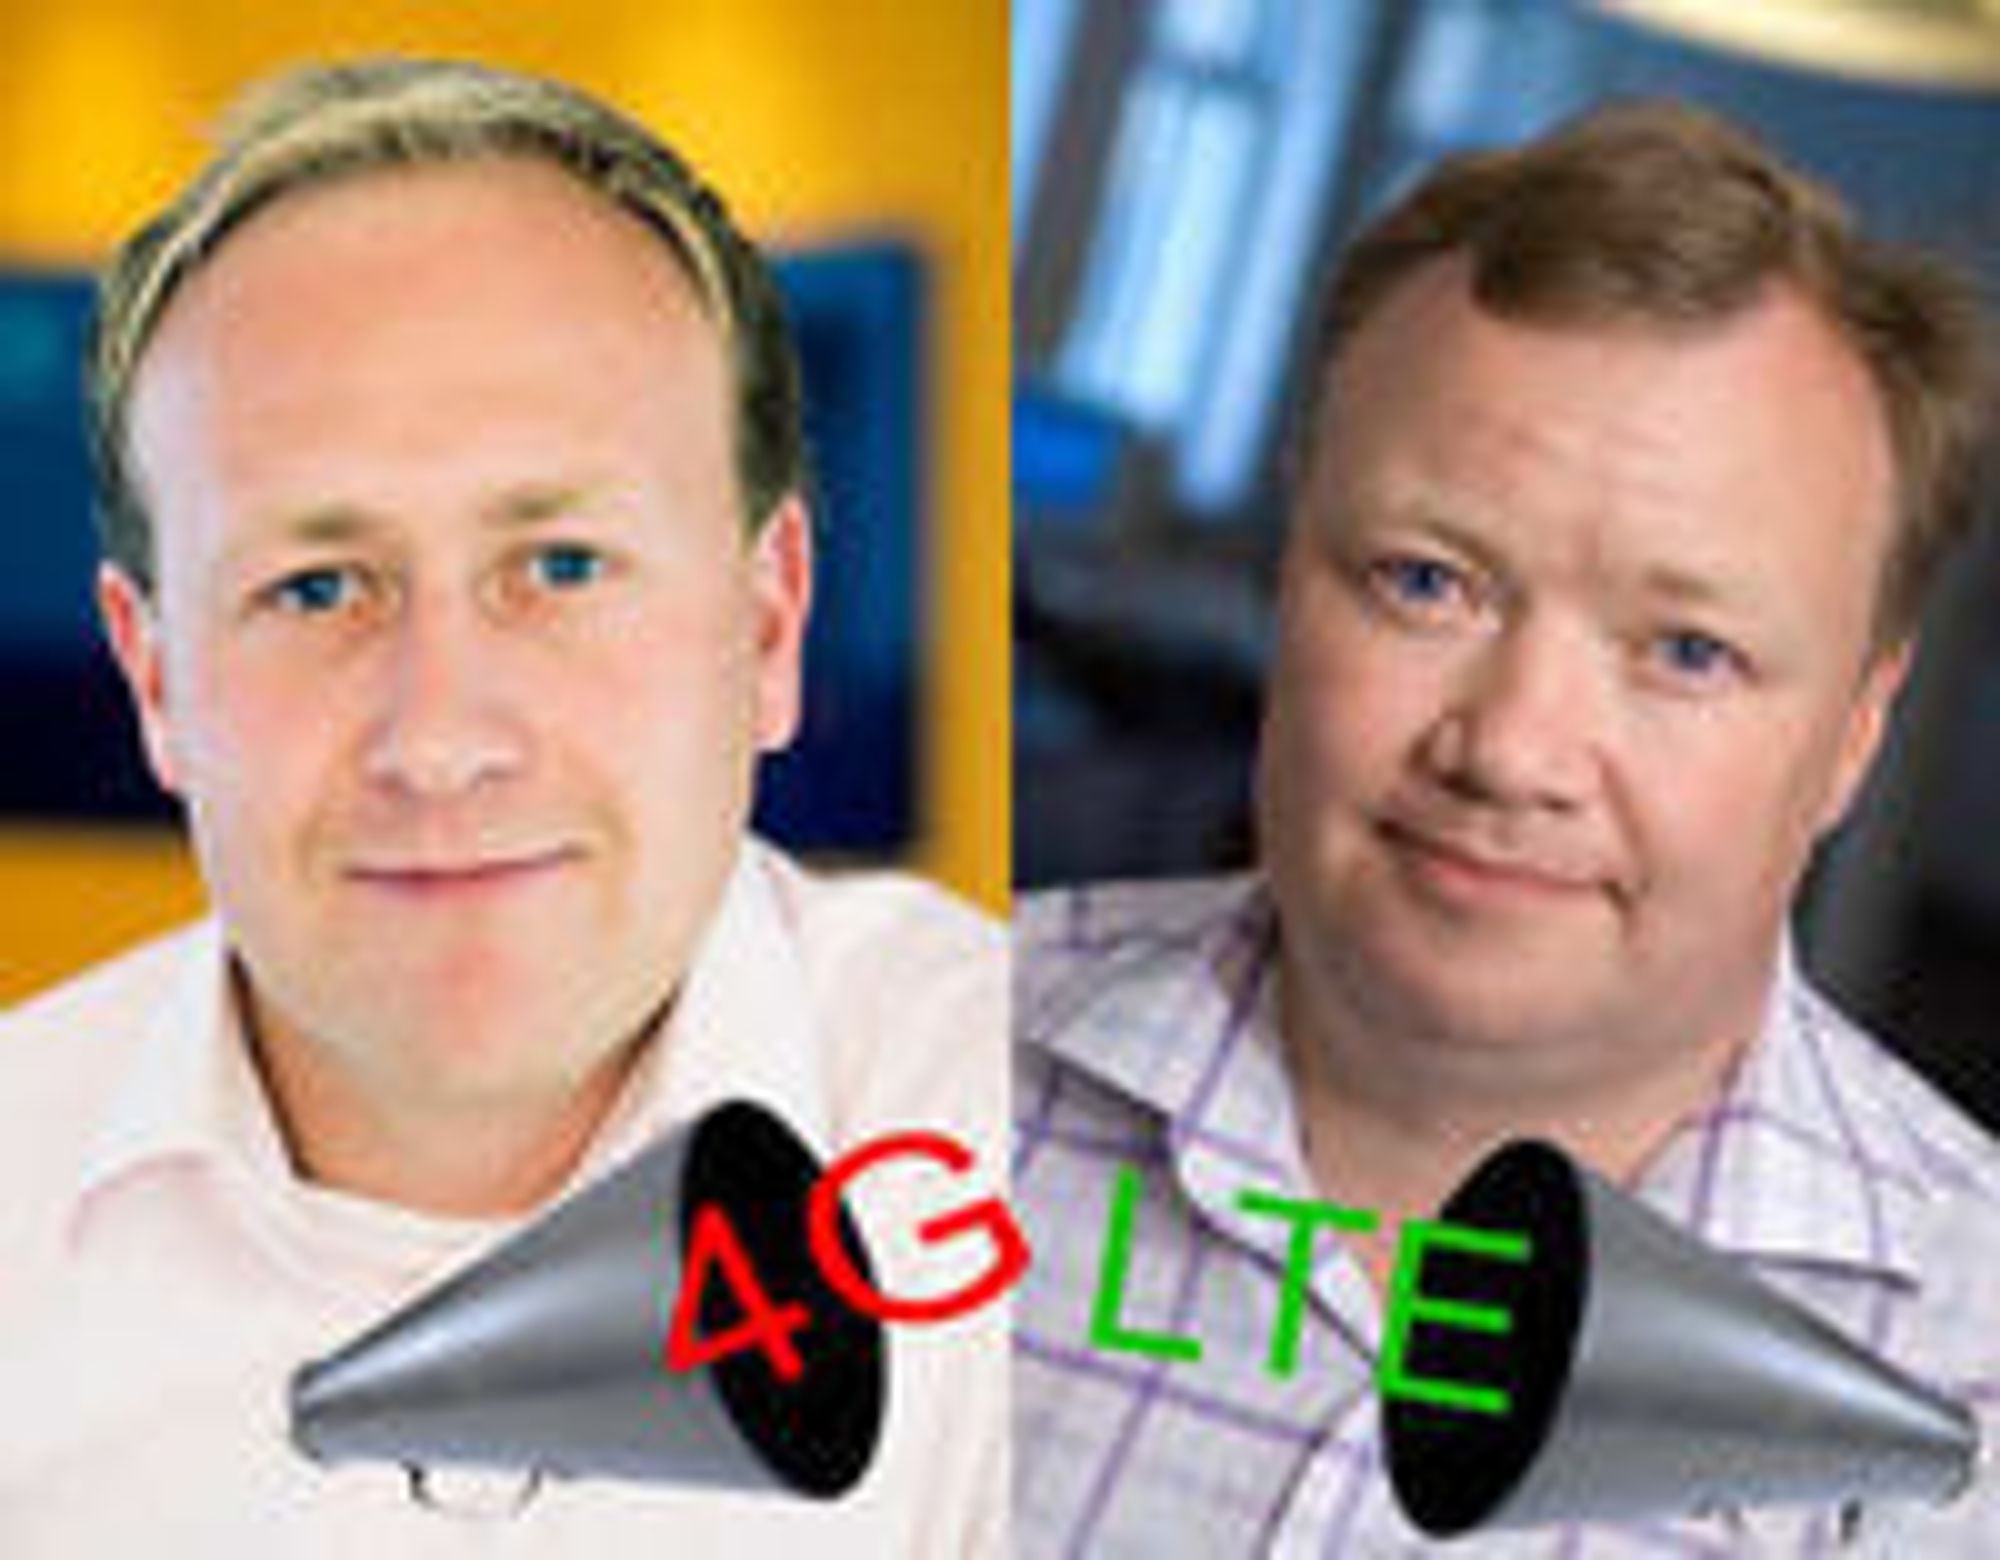 Det handler om å bli forstått av kundene, sier Netcoms Øyvind Vederhus (til v.). - Løgn, mener teleanalytiker John Strand om bruk av begrepet 4G.